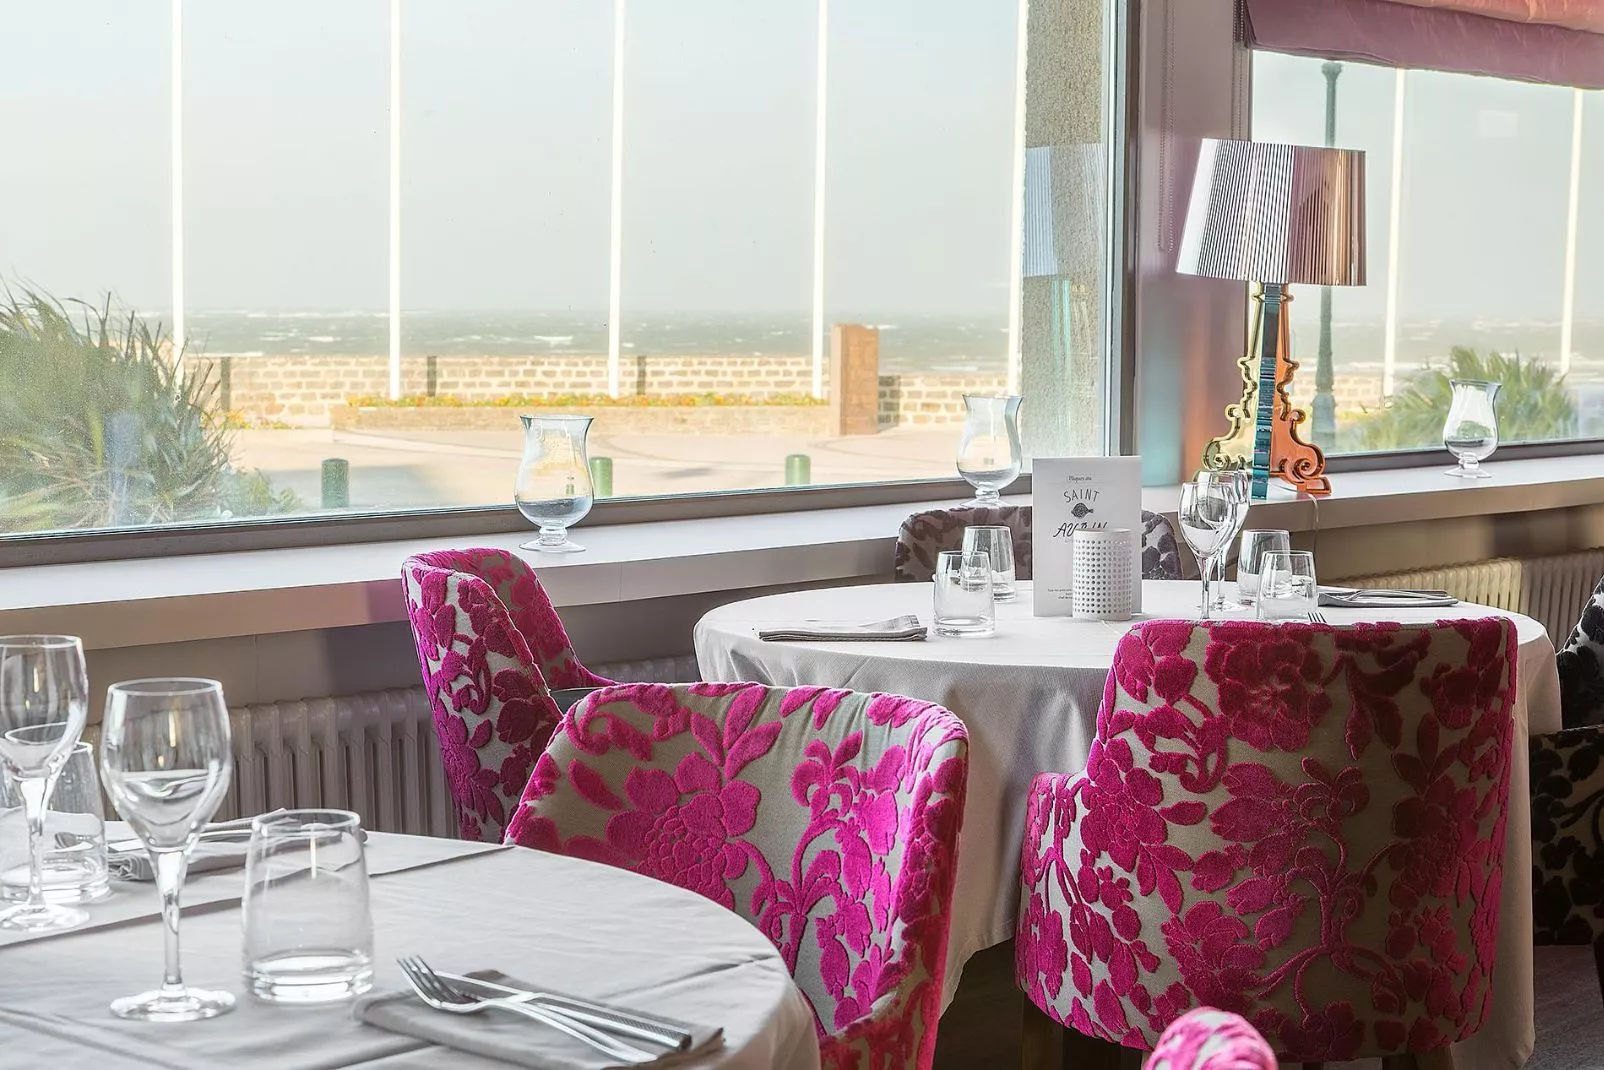 Cozy restaurant overlooking the sea